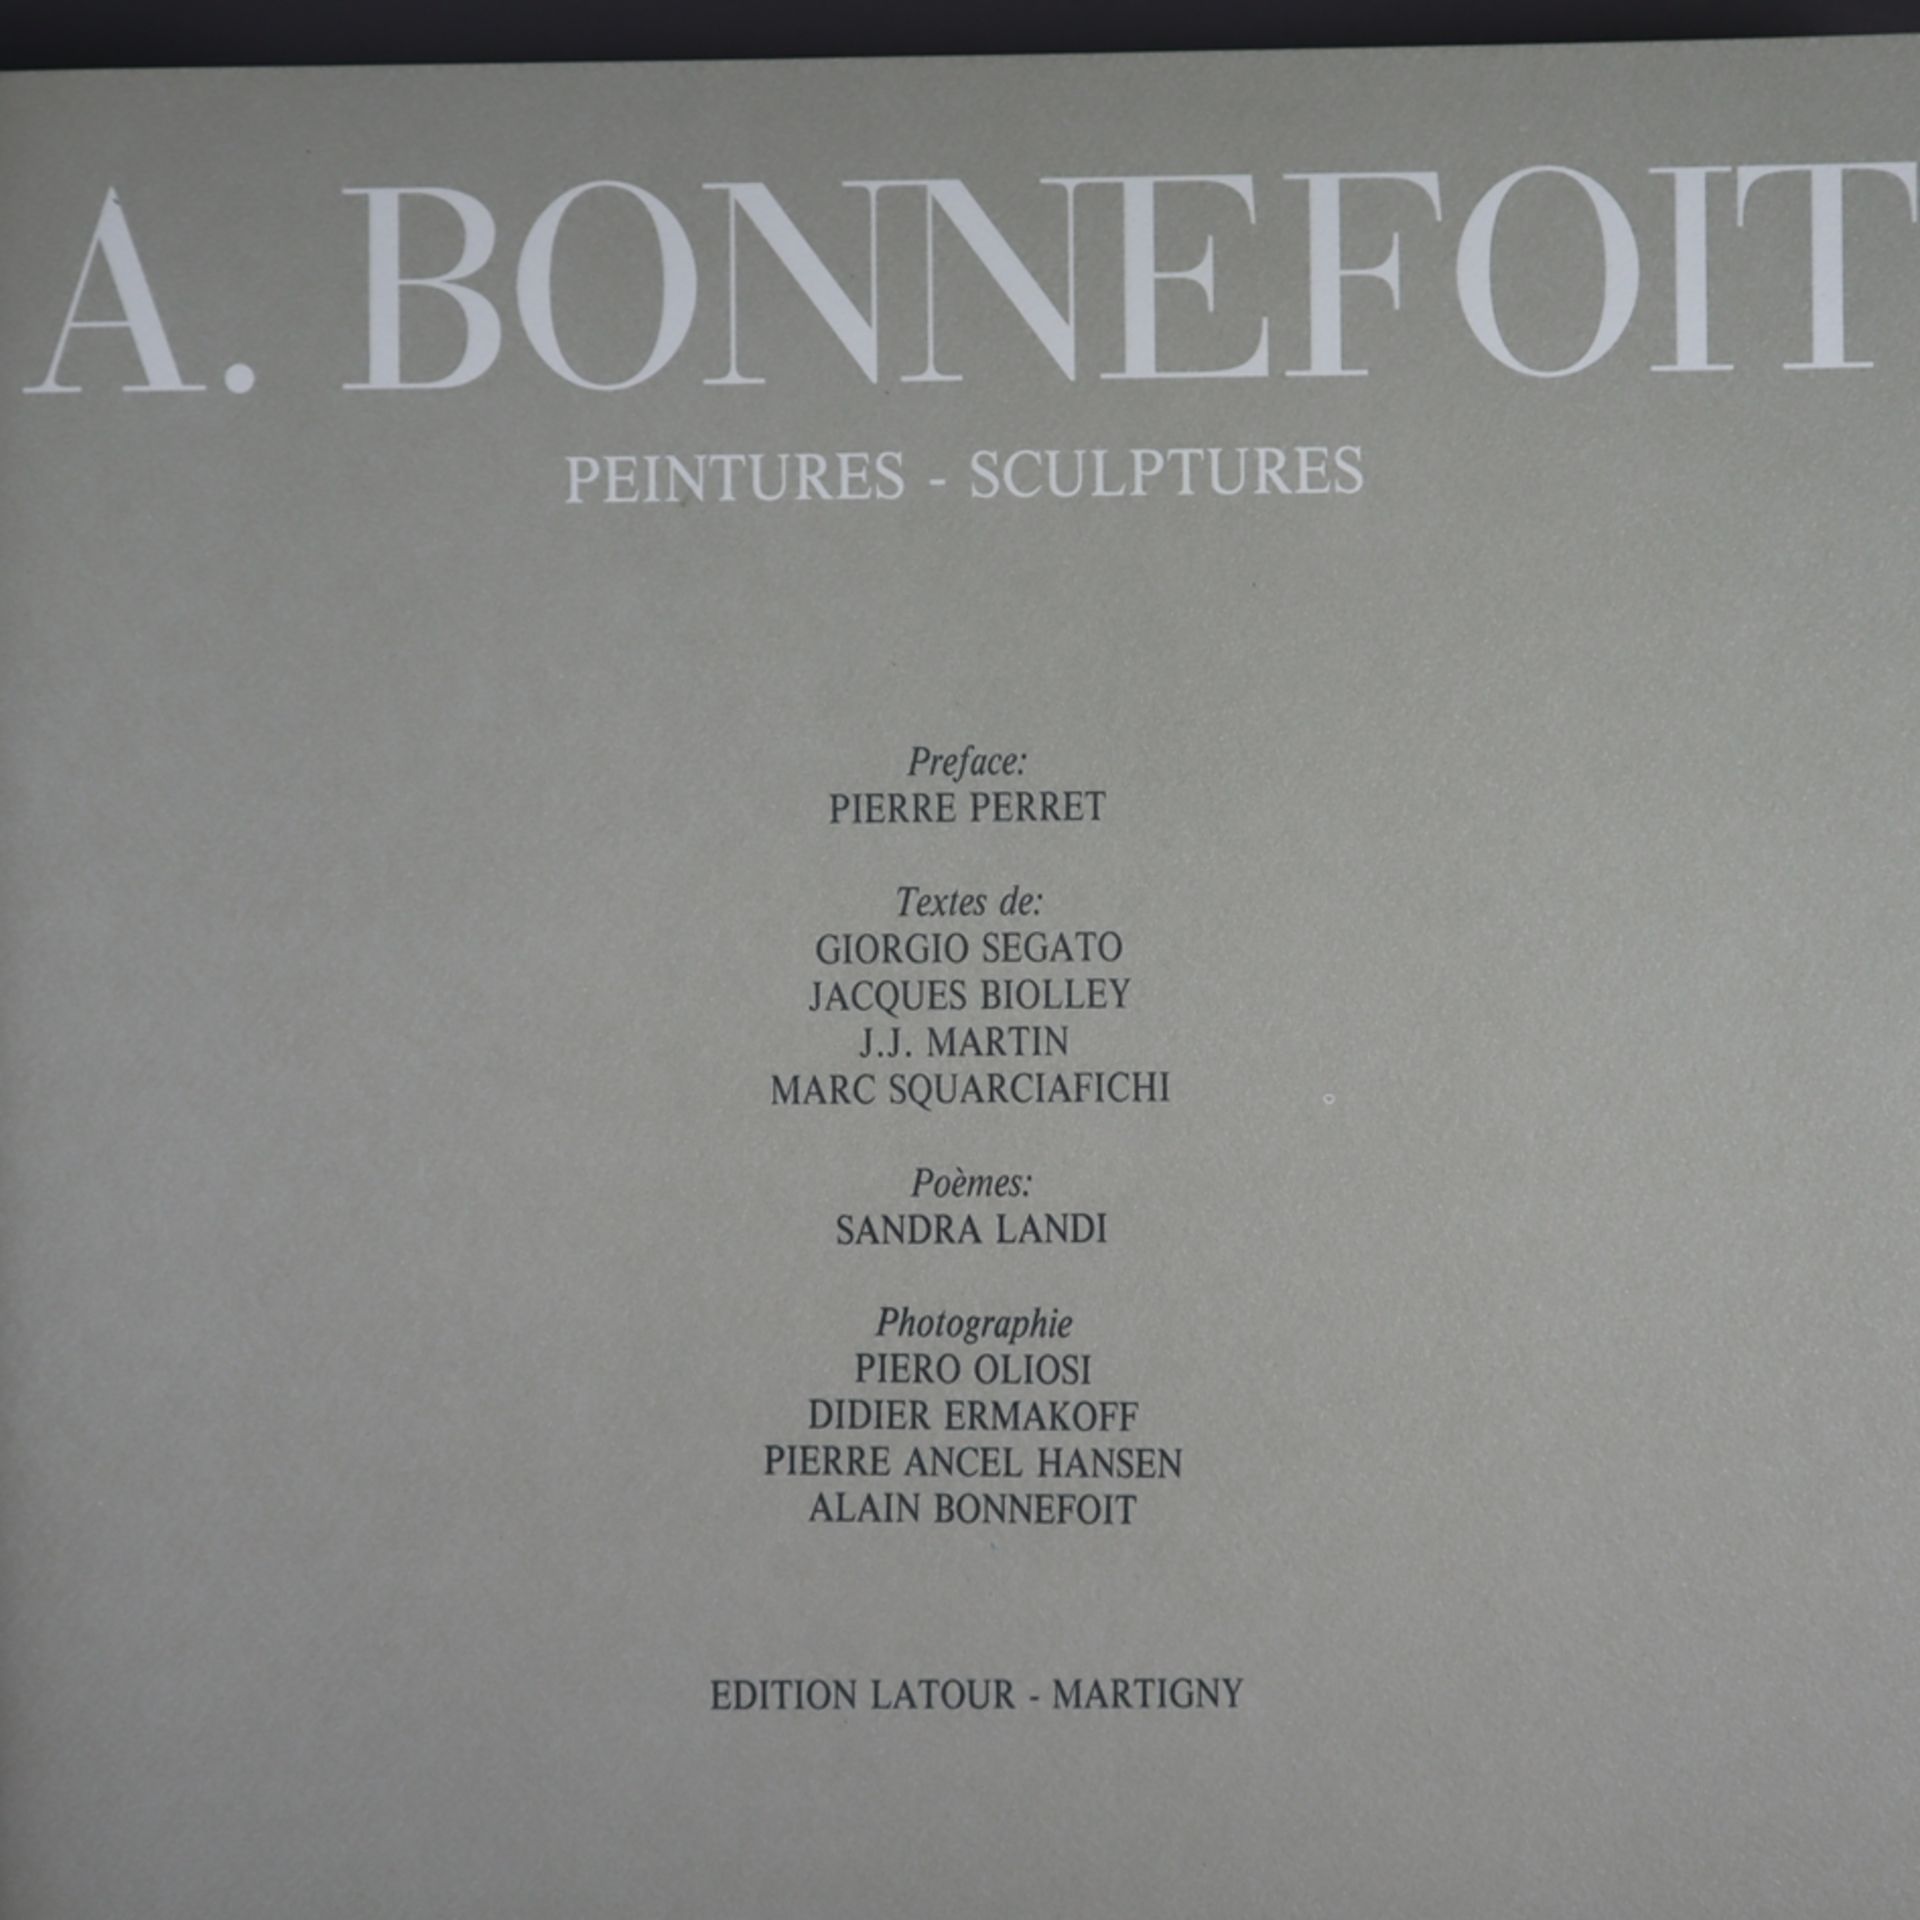 Bonnefoit, Alain (geb. 1937 in Paris) - Peintures - Sculptures, Edition Latour, Martigny 1994, - Bild 2 aus 6